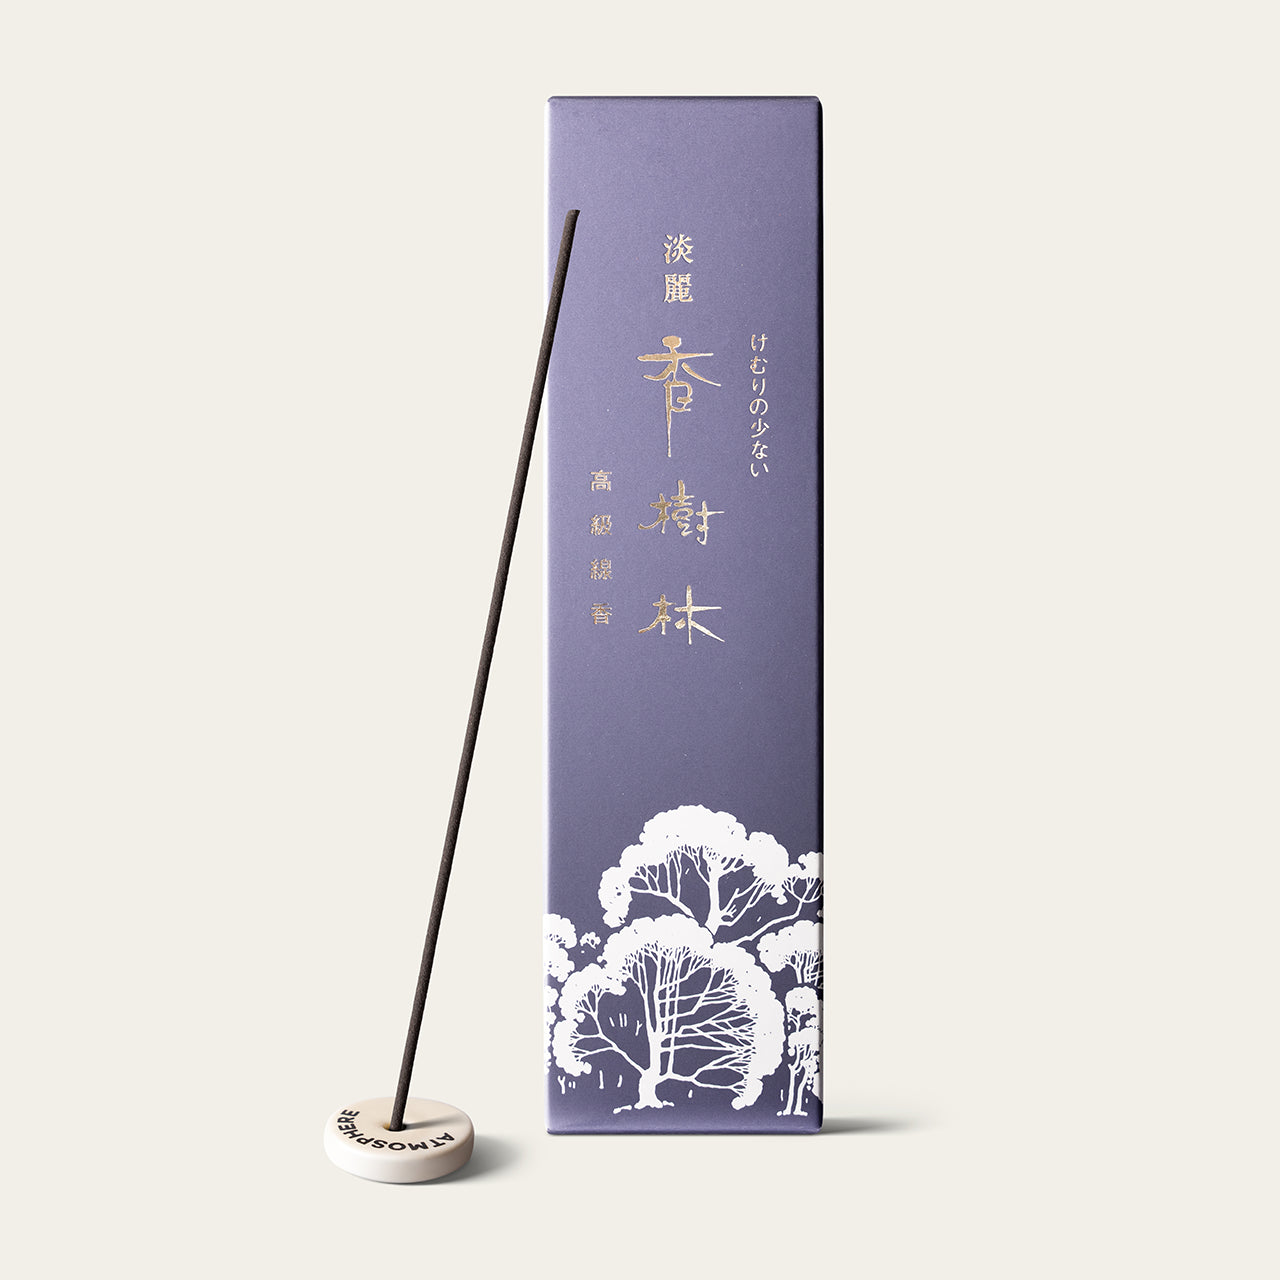 Gyokushodo Tanrei Kojurin Refreshing Japanese incense sticks (25 sticks) with Atmosphere ceramic incense holder